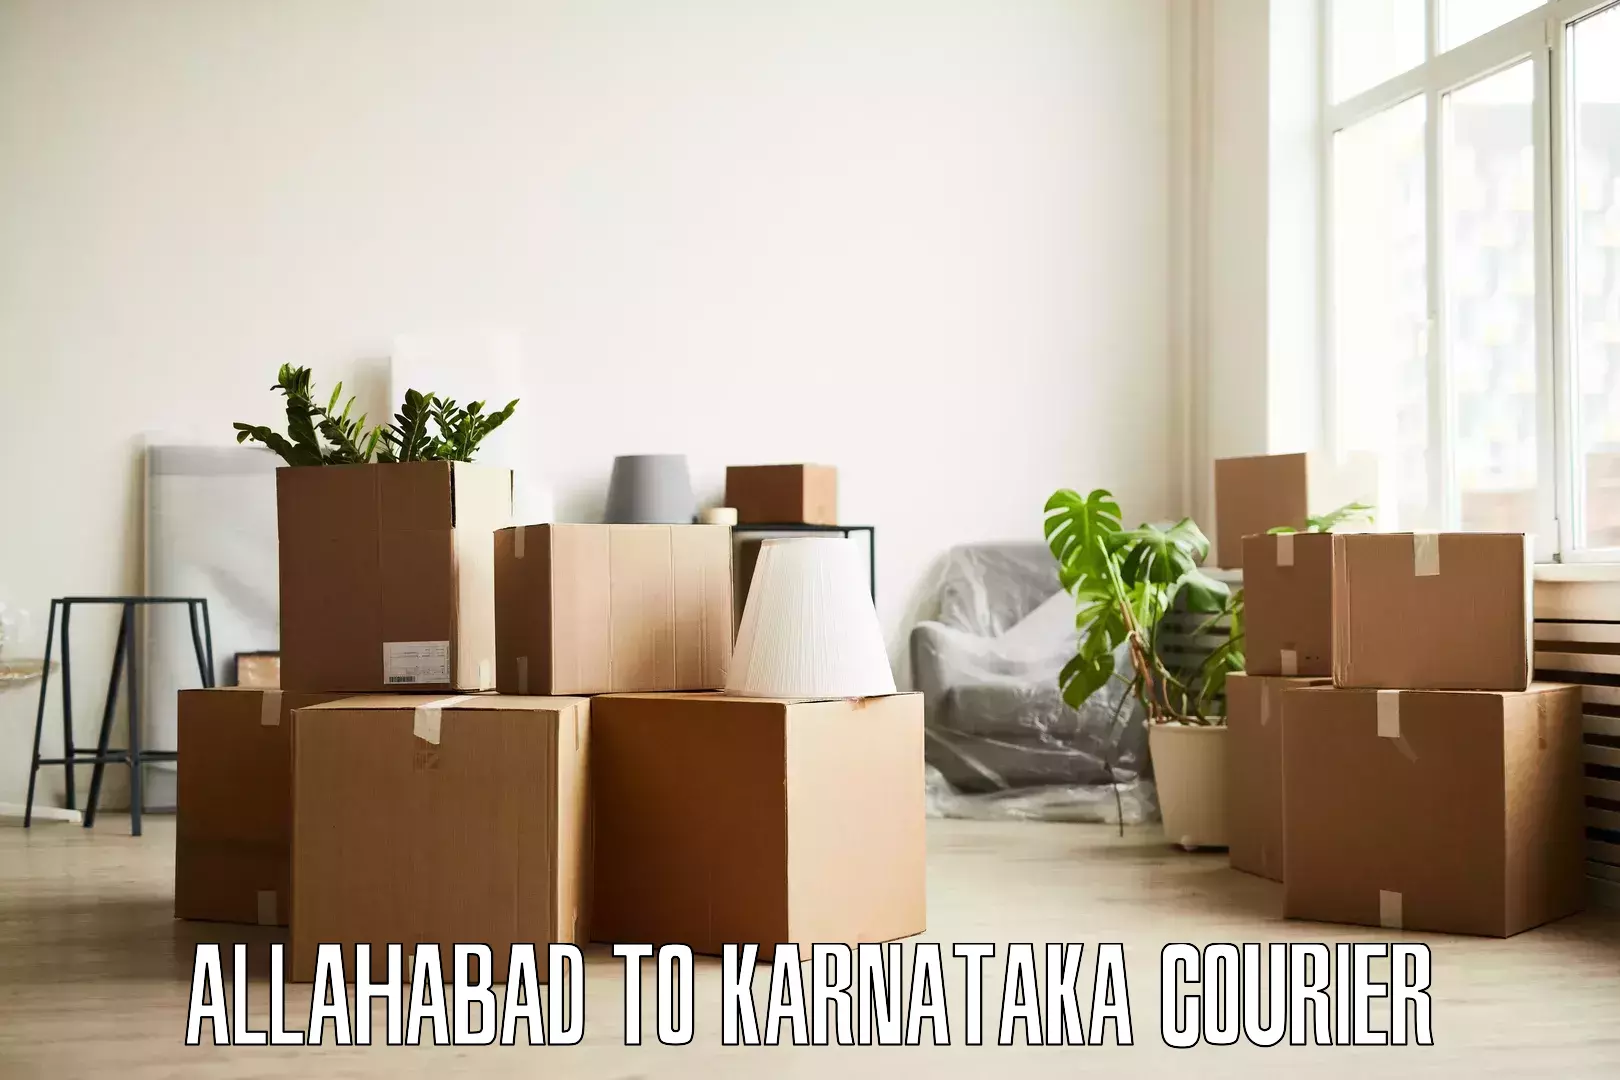 Furniture transport and storage Allahabad to Kanjarakatte